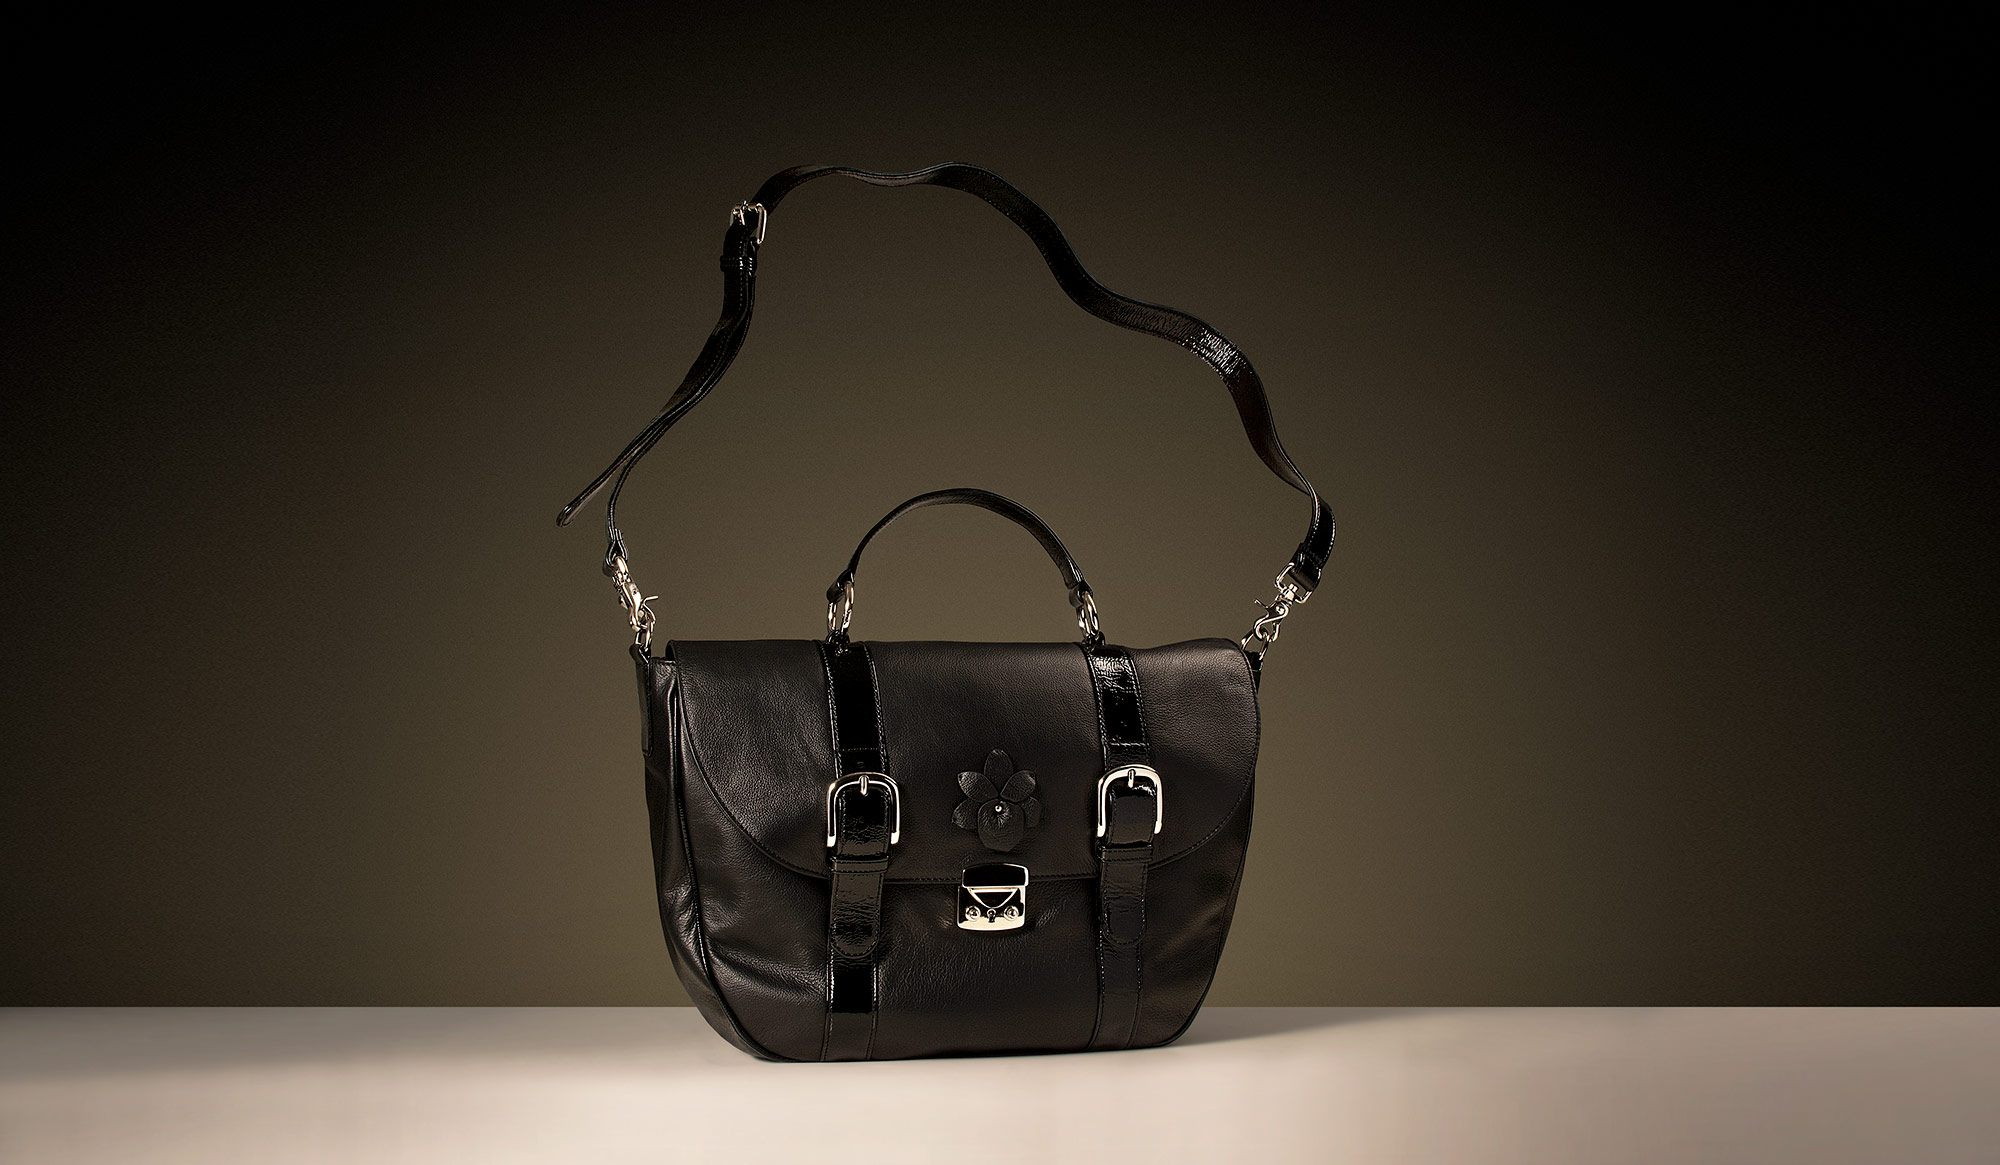 Luxury women's handbag product photography